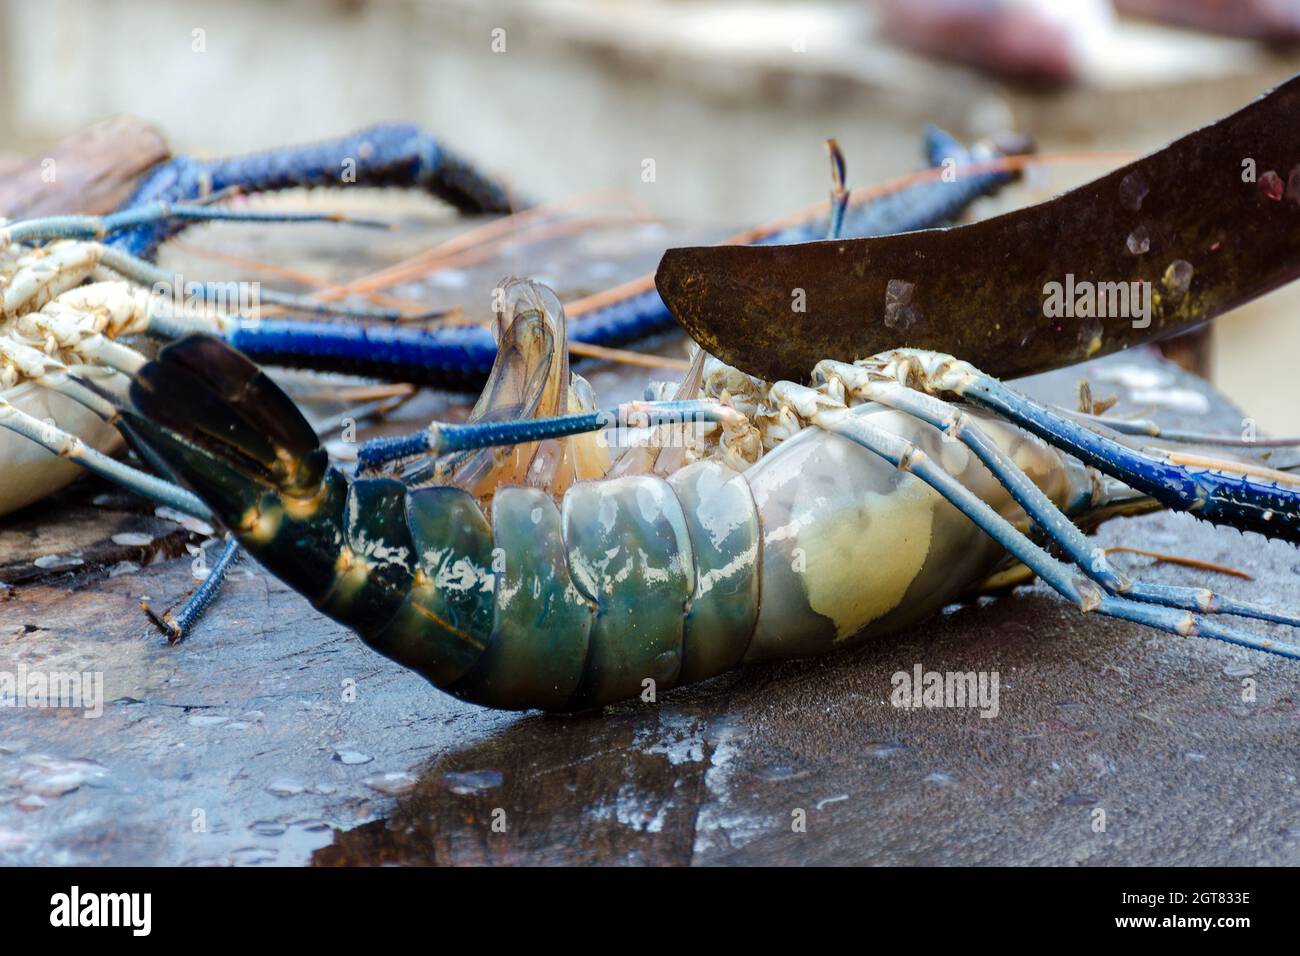 Cortes de mariscos - Cocinar langosta espinosa. Carve Lobster en un mercado de pescado callejero en Sri Lanka. Foto de stock